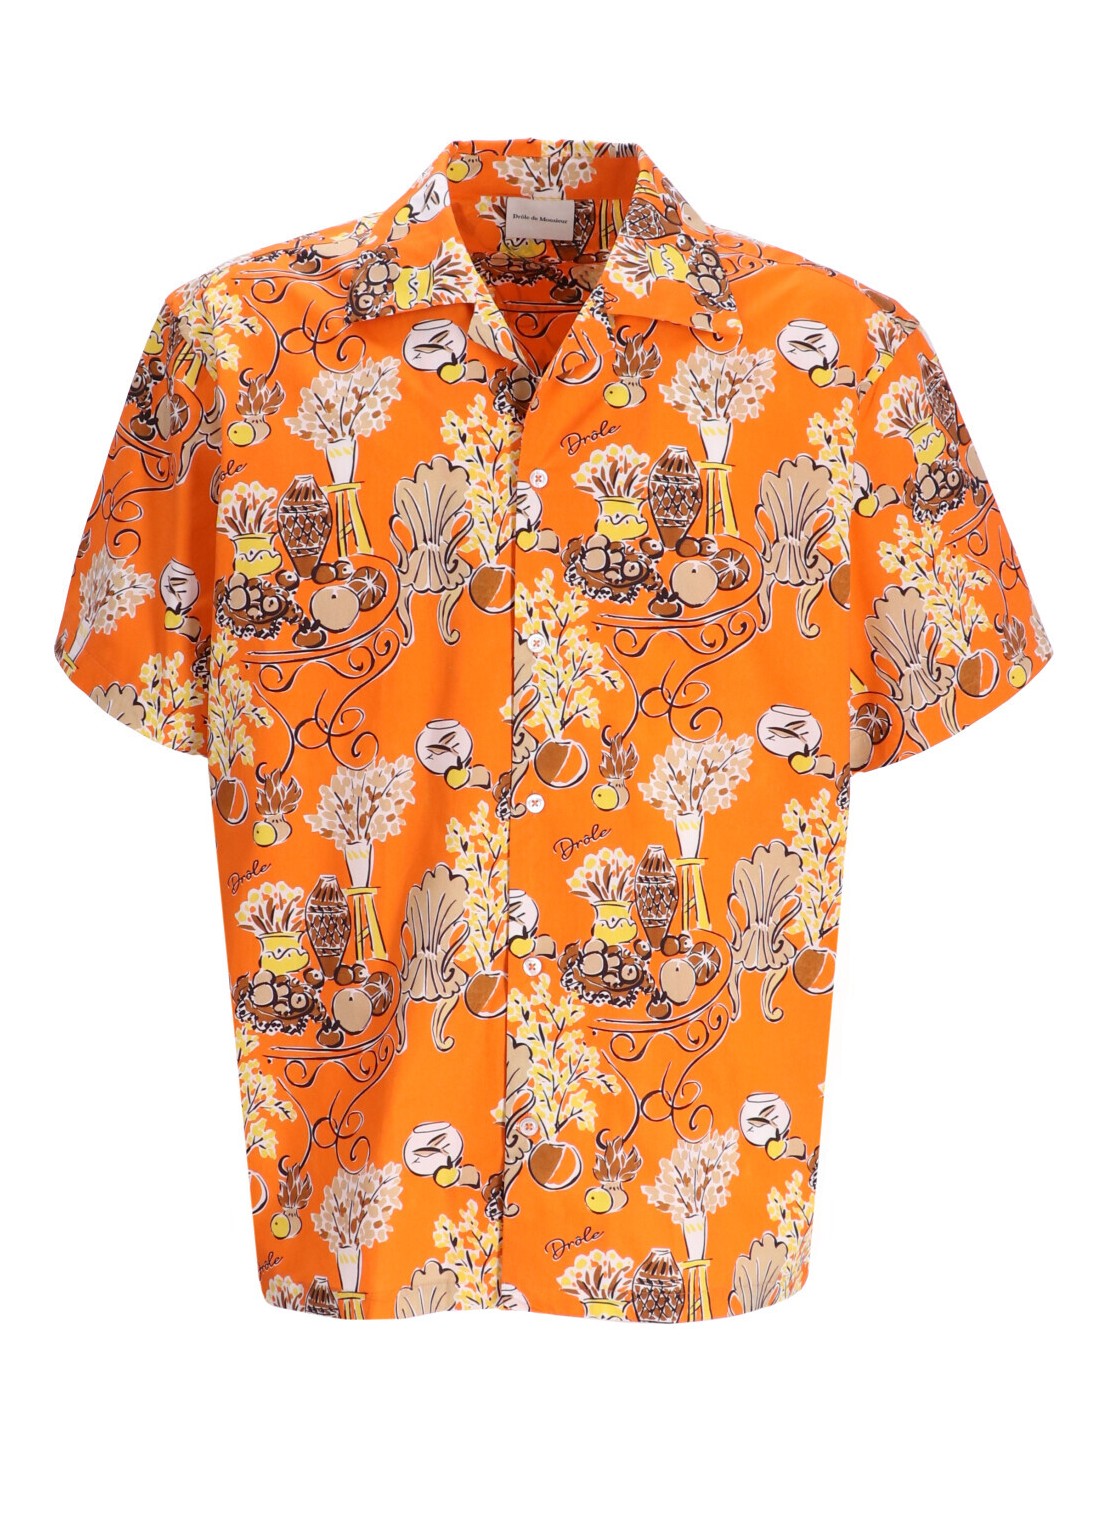 Camiseria drole de monsieur shirt man la chemise terrasse dsh170co128or orange talla XL
 